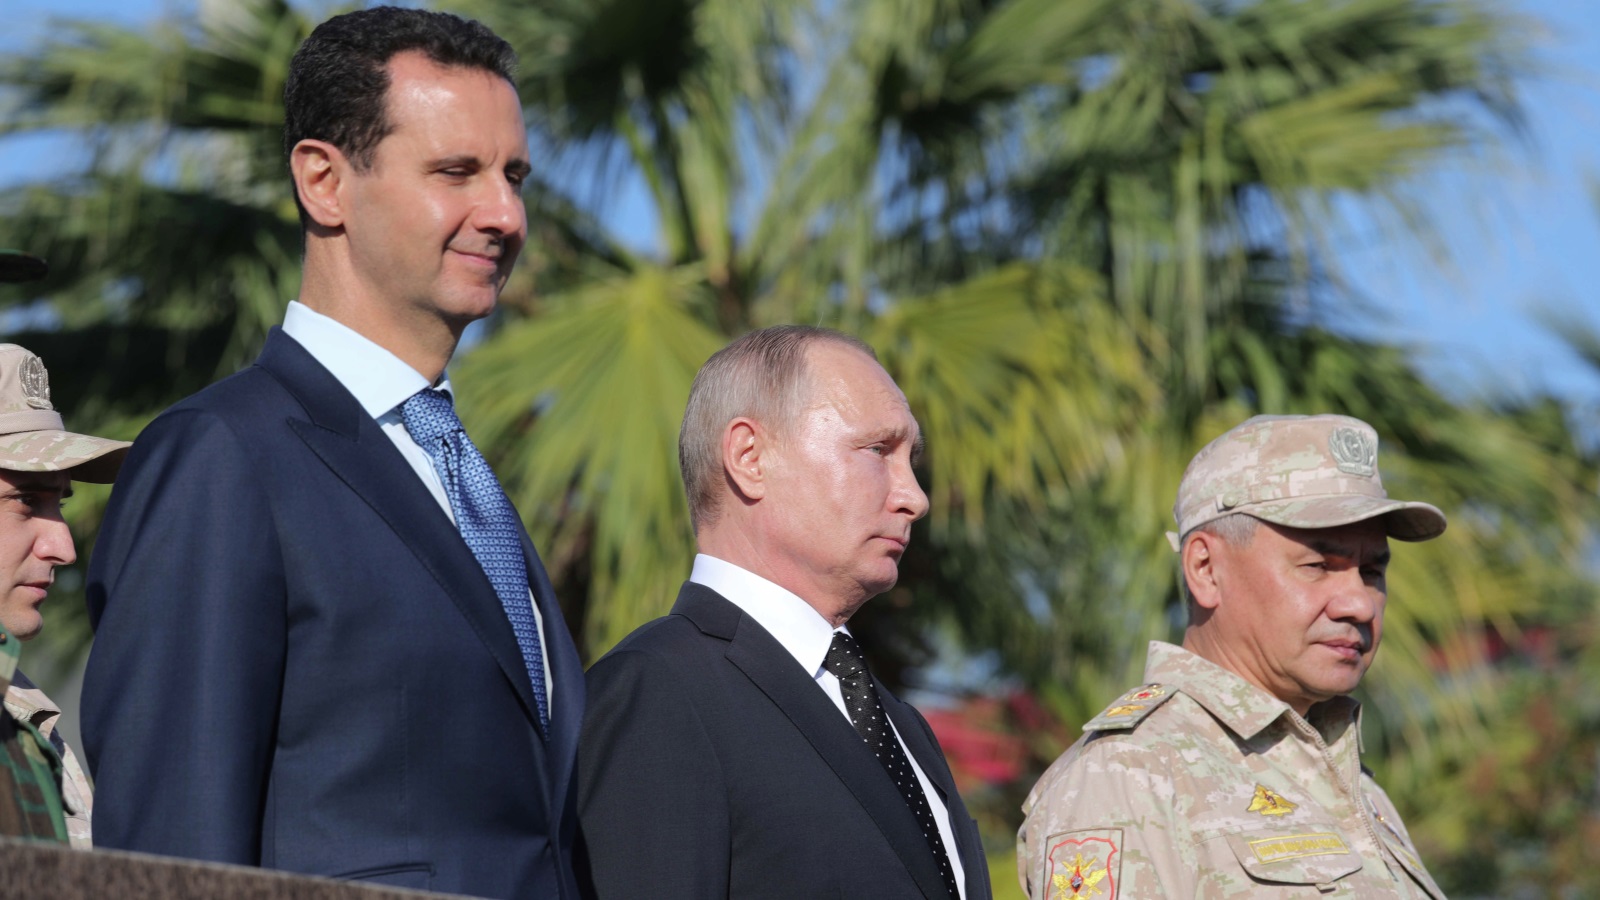 تطمح روسيا أن تعود للشرق الأوسط من بوابة سوريا، وتسعى أن تستعيد معاقلها القديمة، كما في ليبيا